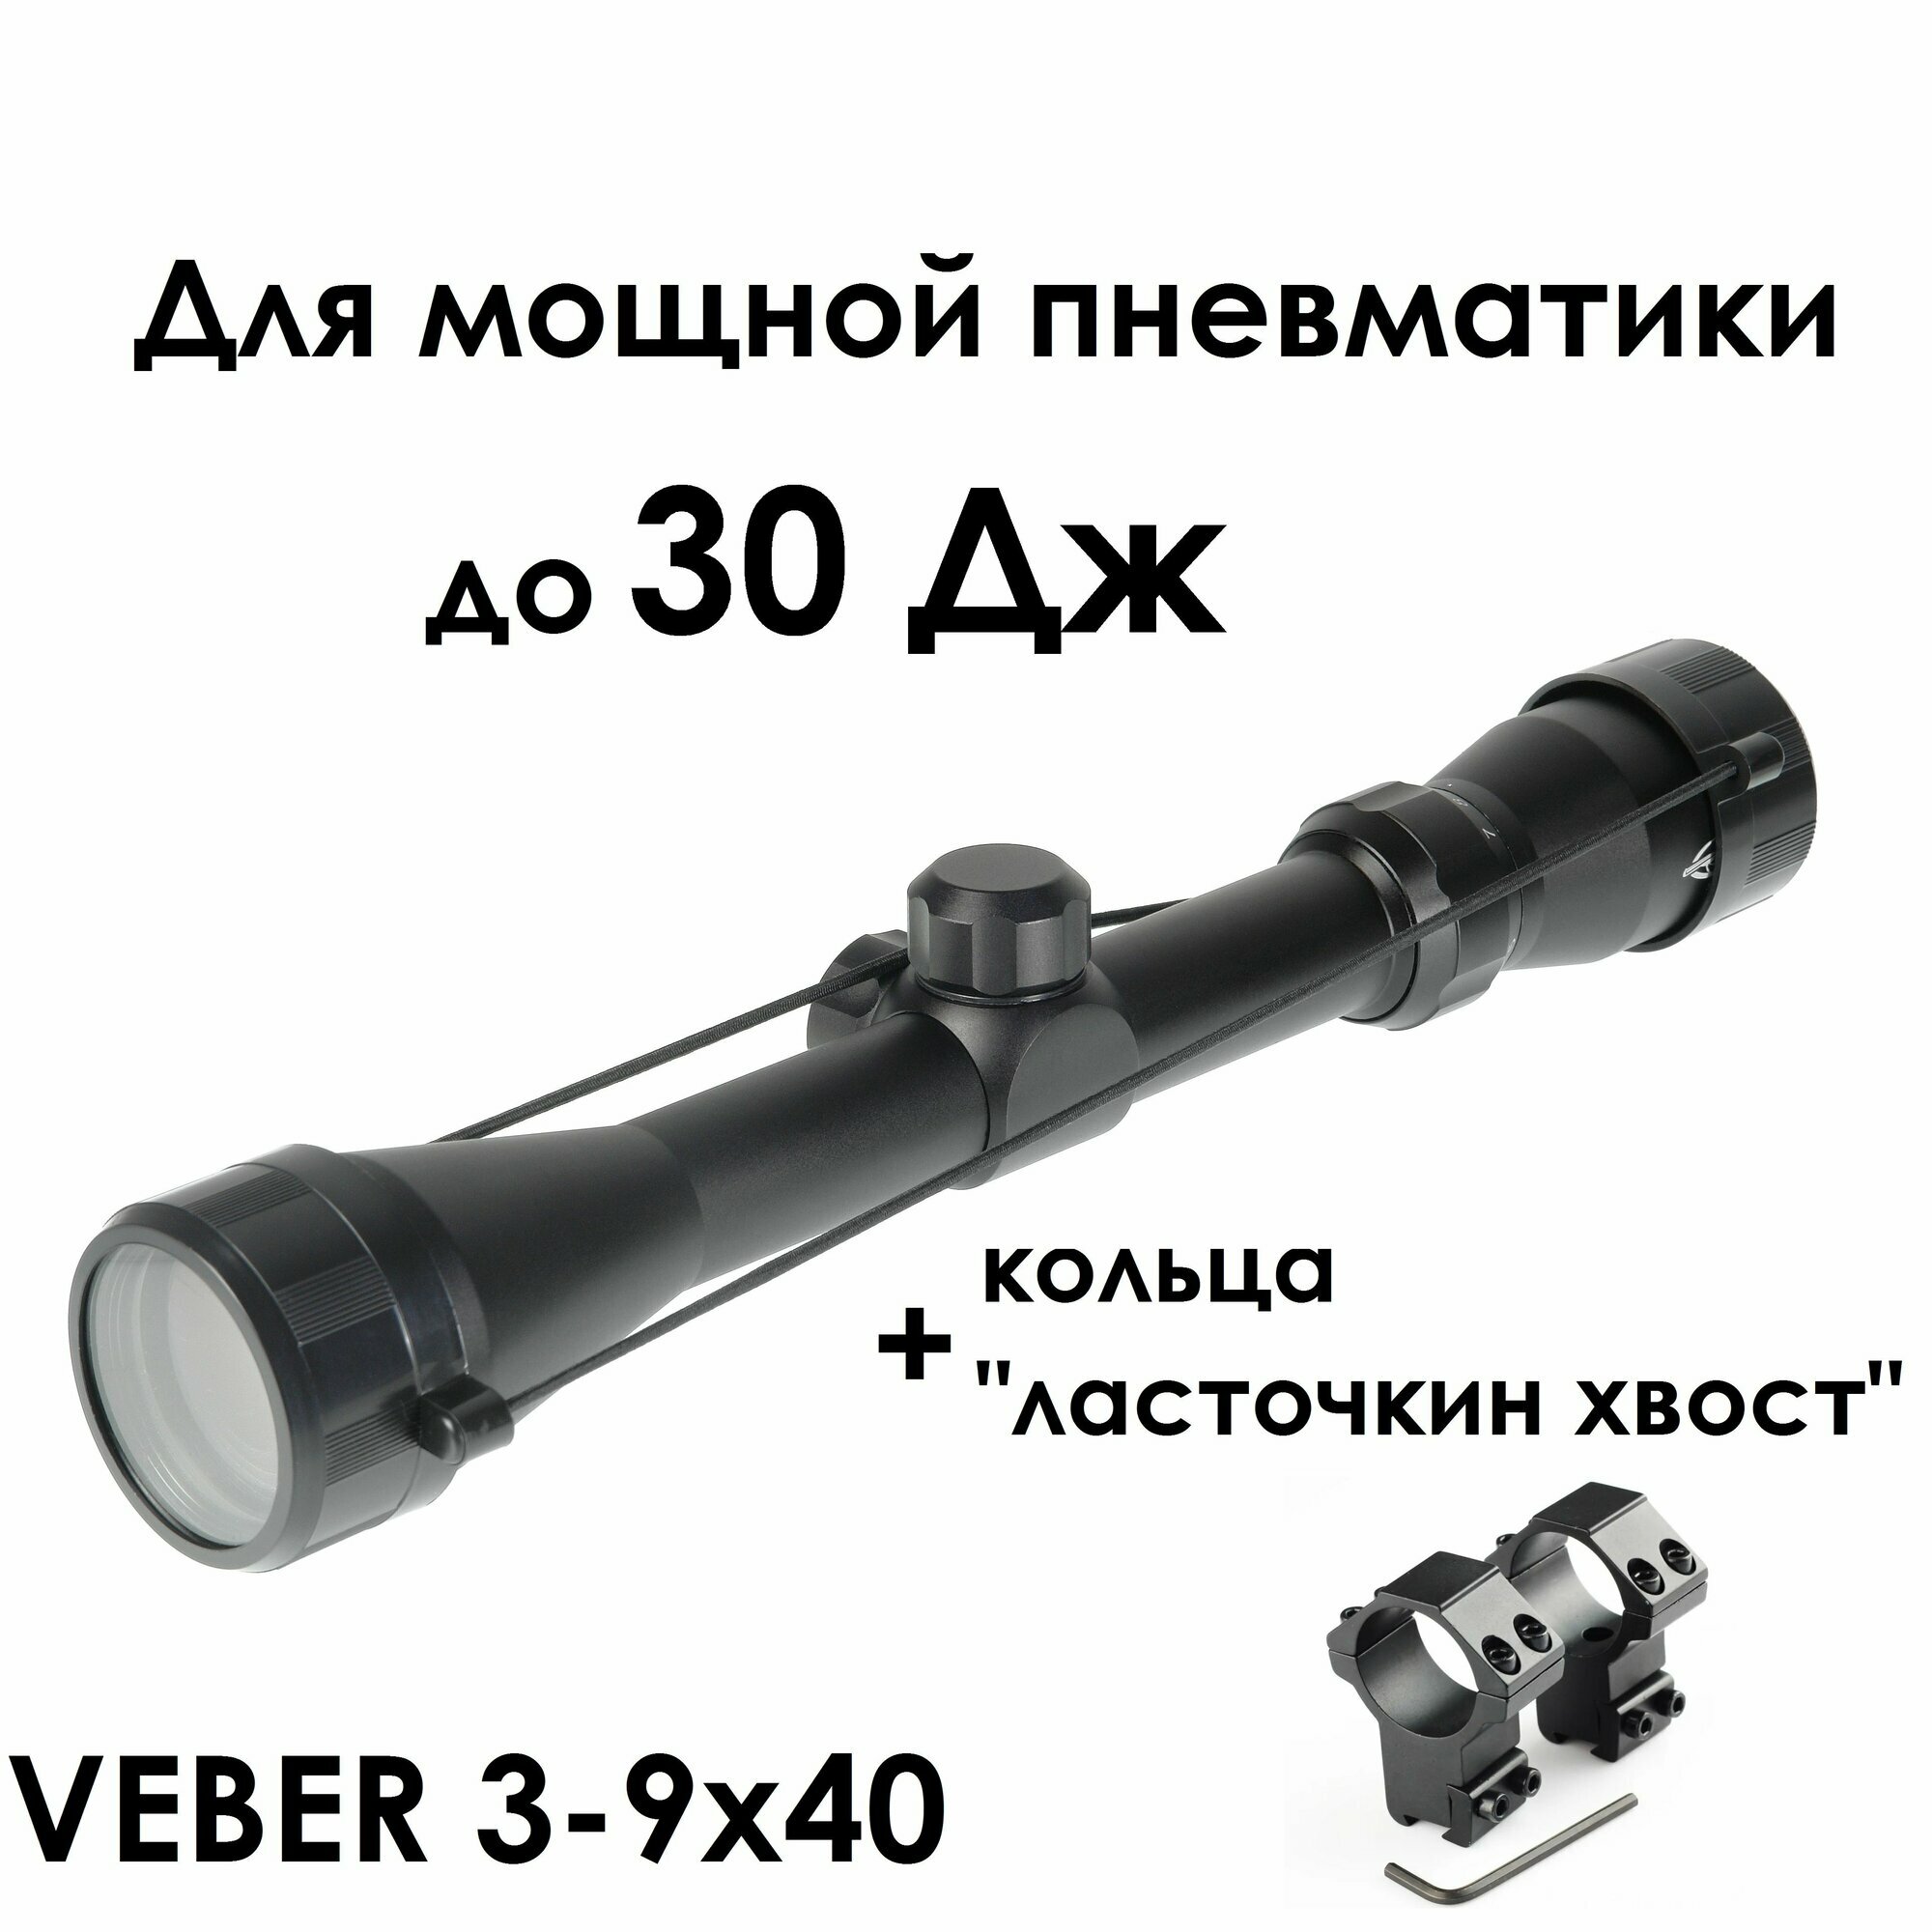 Оптический прицел VEBER "Храбрый заяц" 3-9x40 с кронштейном для Магнум пневматики (ласточкин хвост)